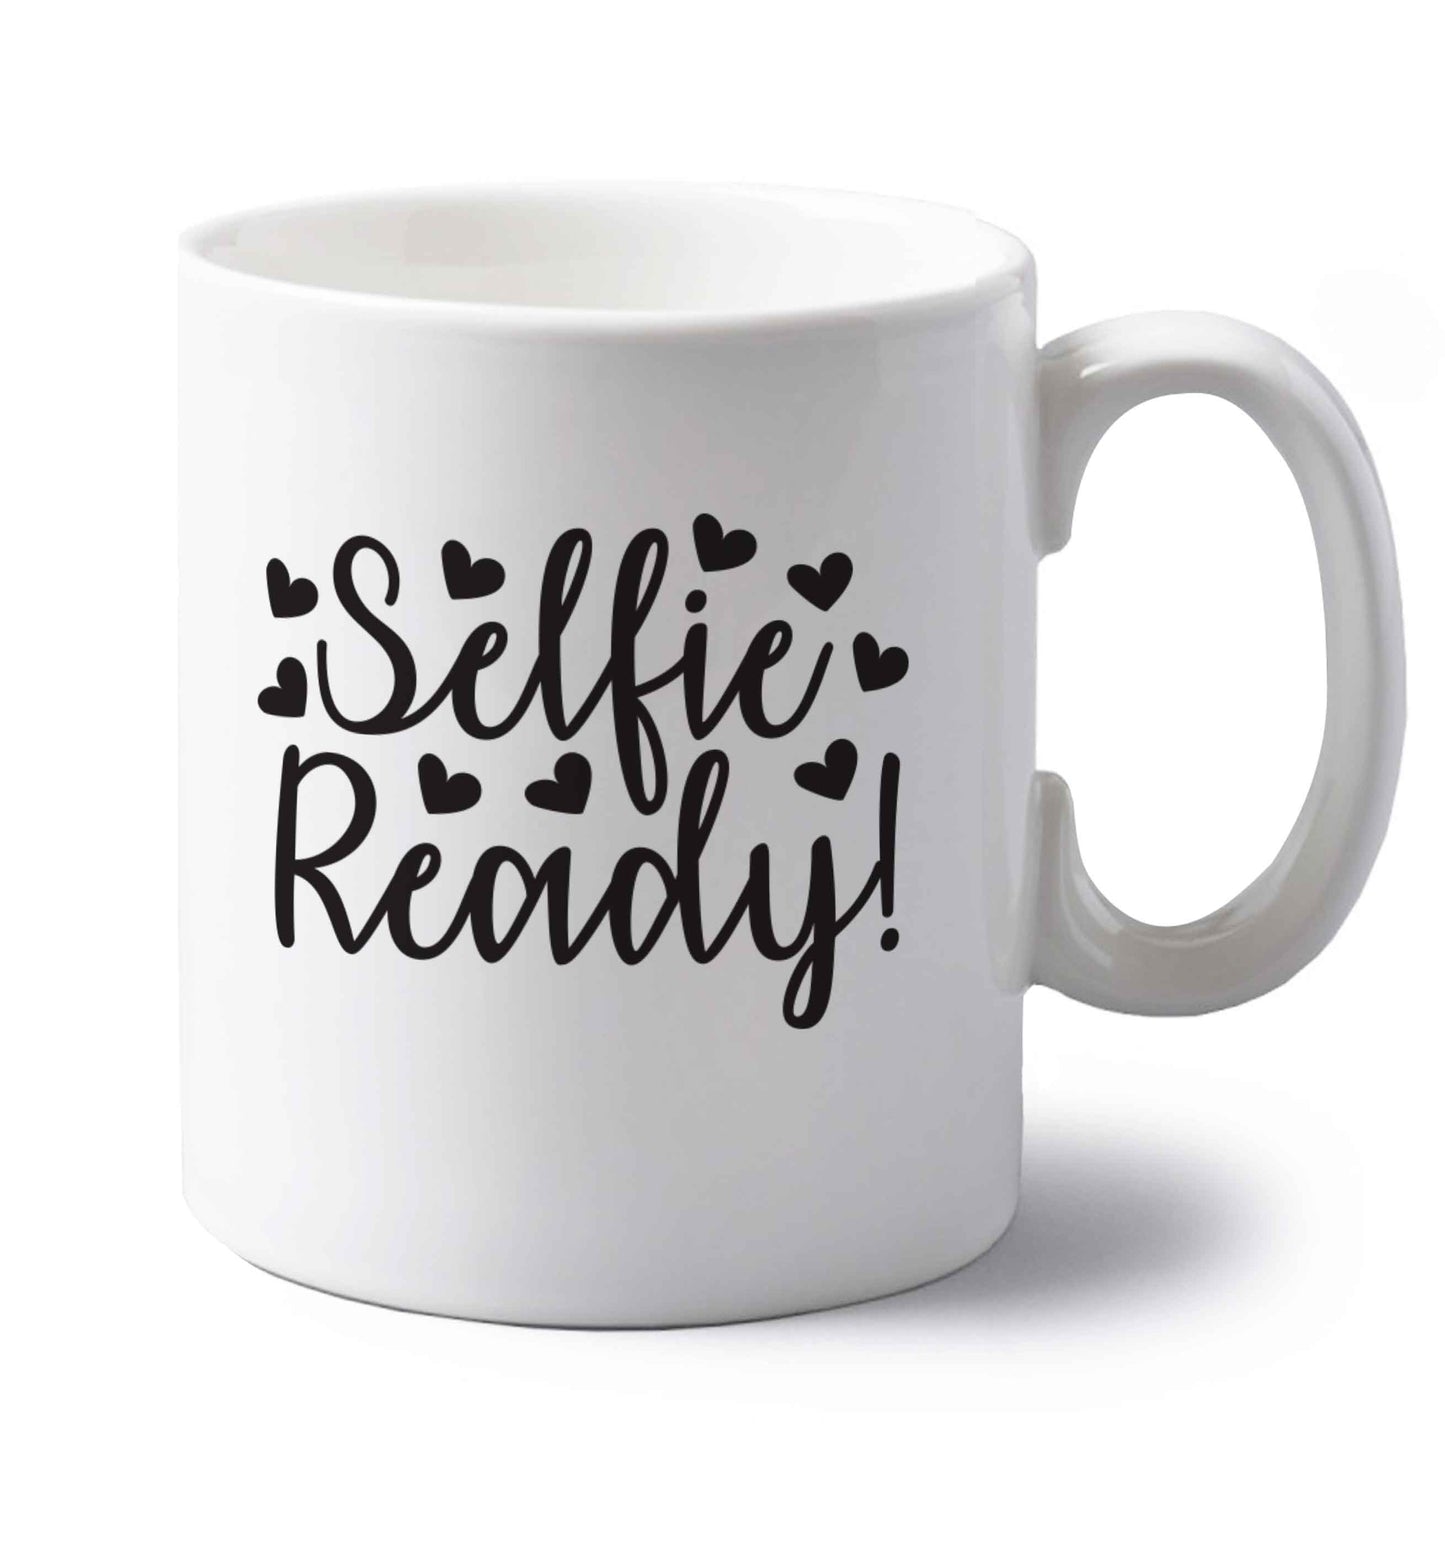 Selfie ready left handed white ceramic mug 